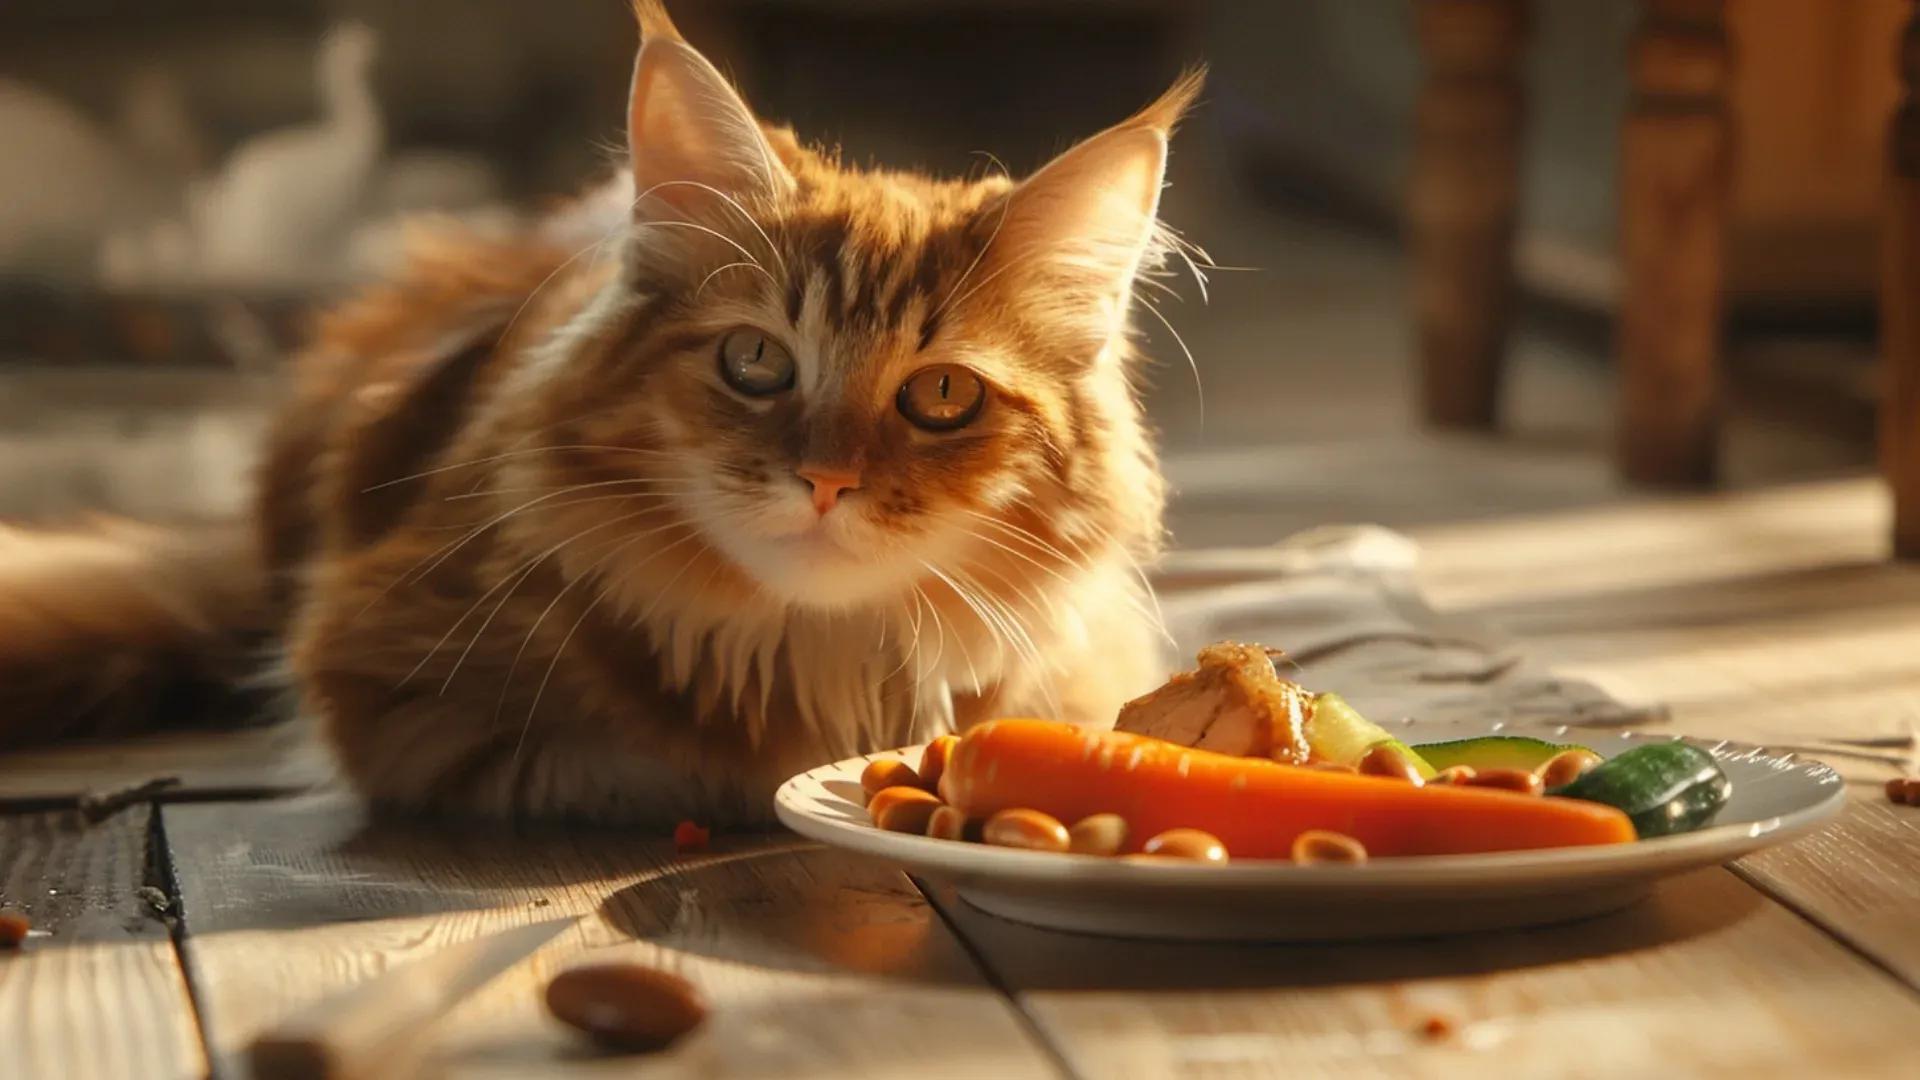 Donner de la nourriture humaine à son chat : est-ce une bonne idée ?